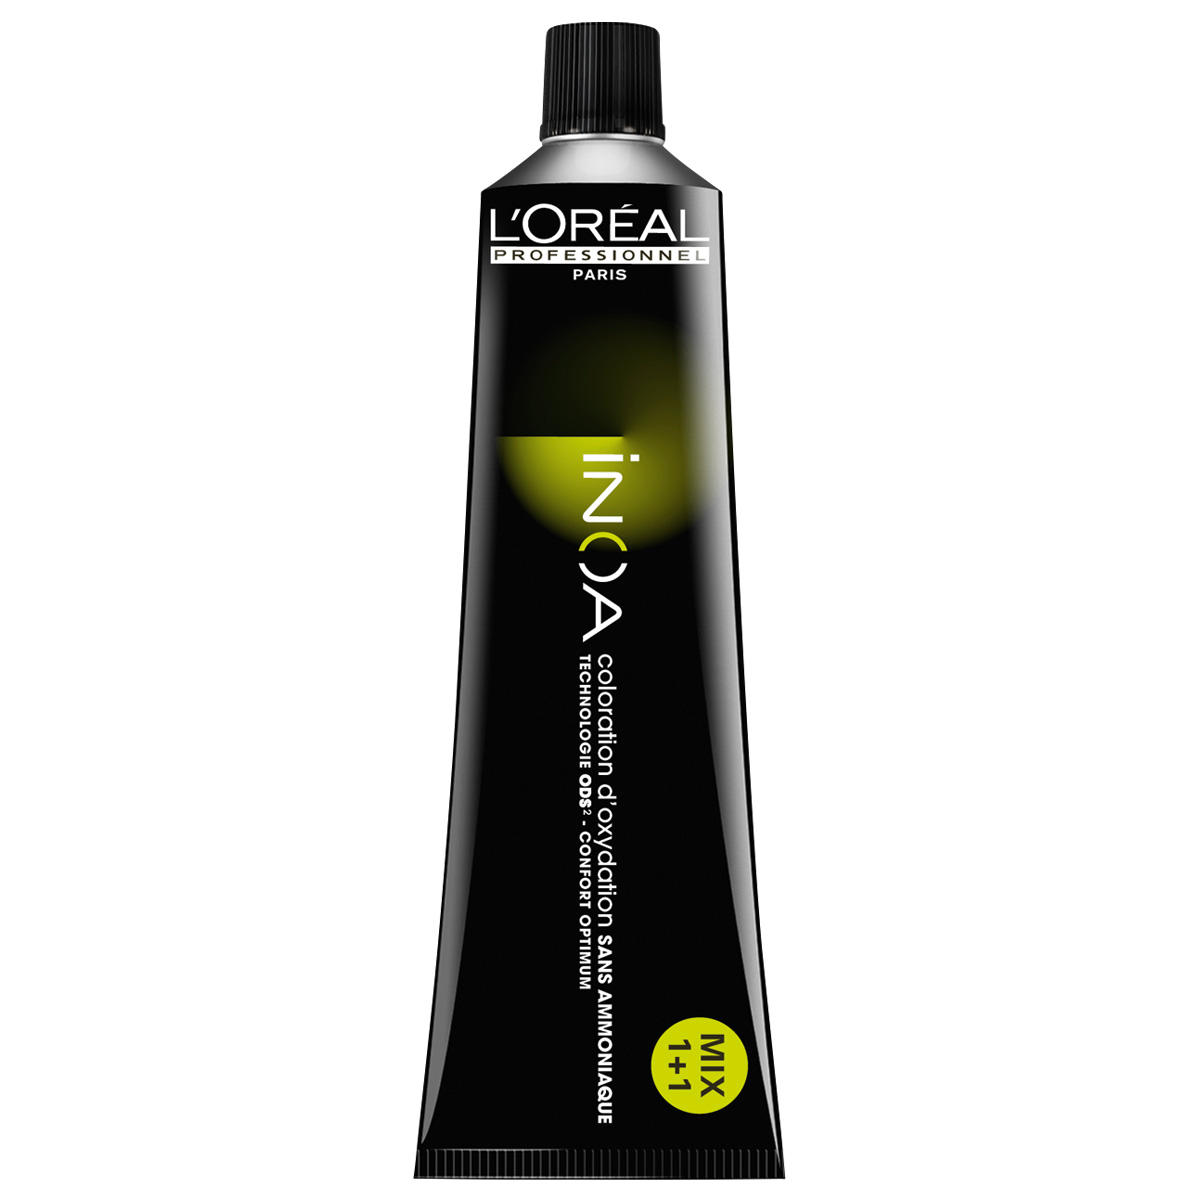 L'Oréal Professionnel Paris Coloration 4,20 brun moyen irisé intense, Tube 60 ml - 1